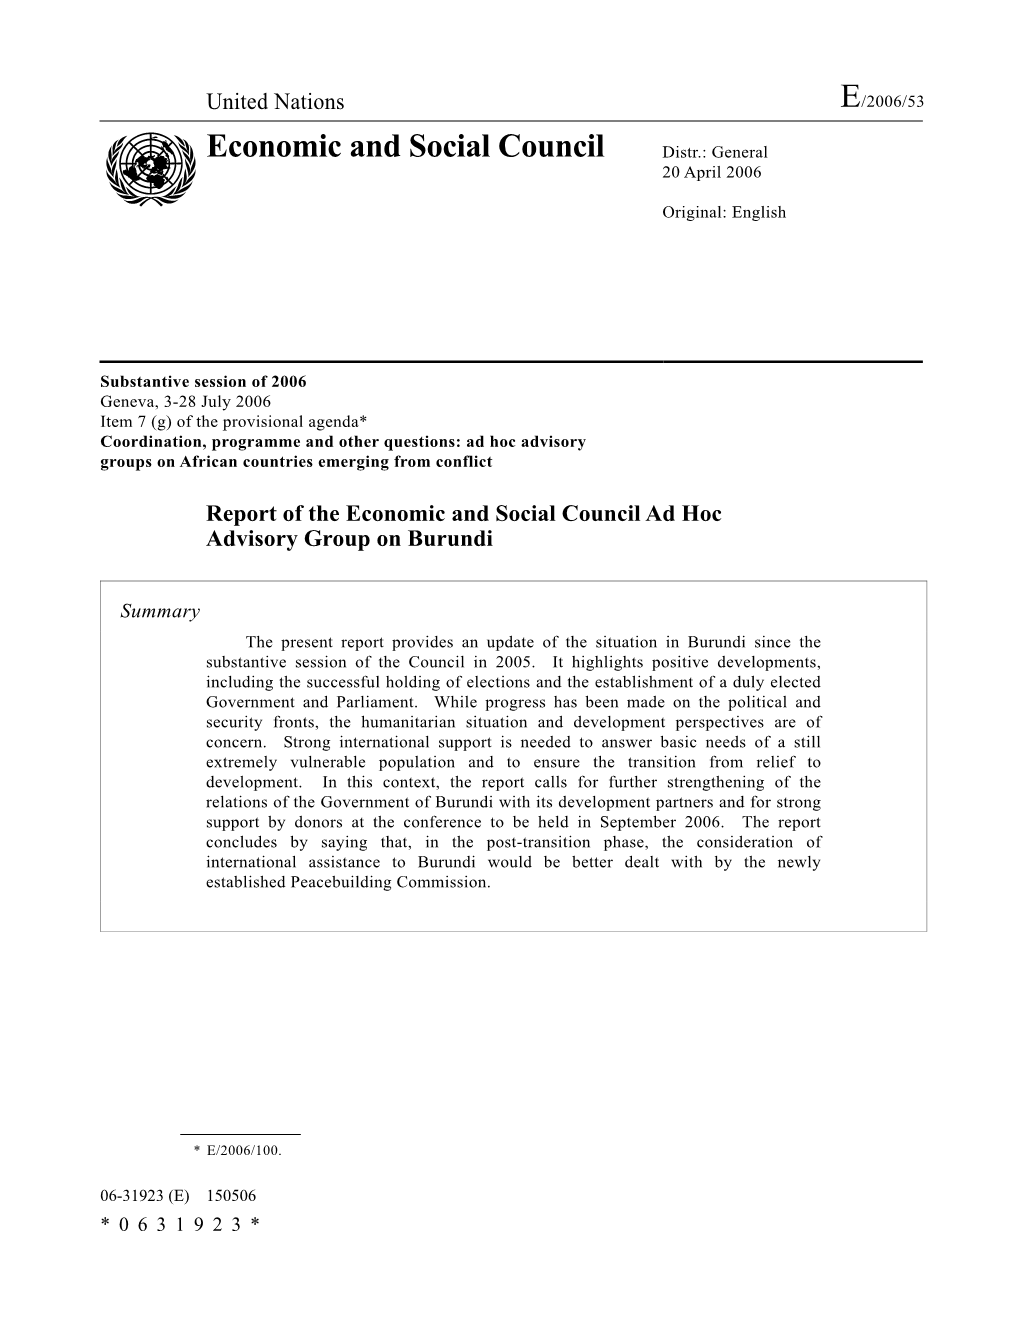 Economic and Social Council Distr.: General 20 April 2006